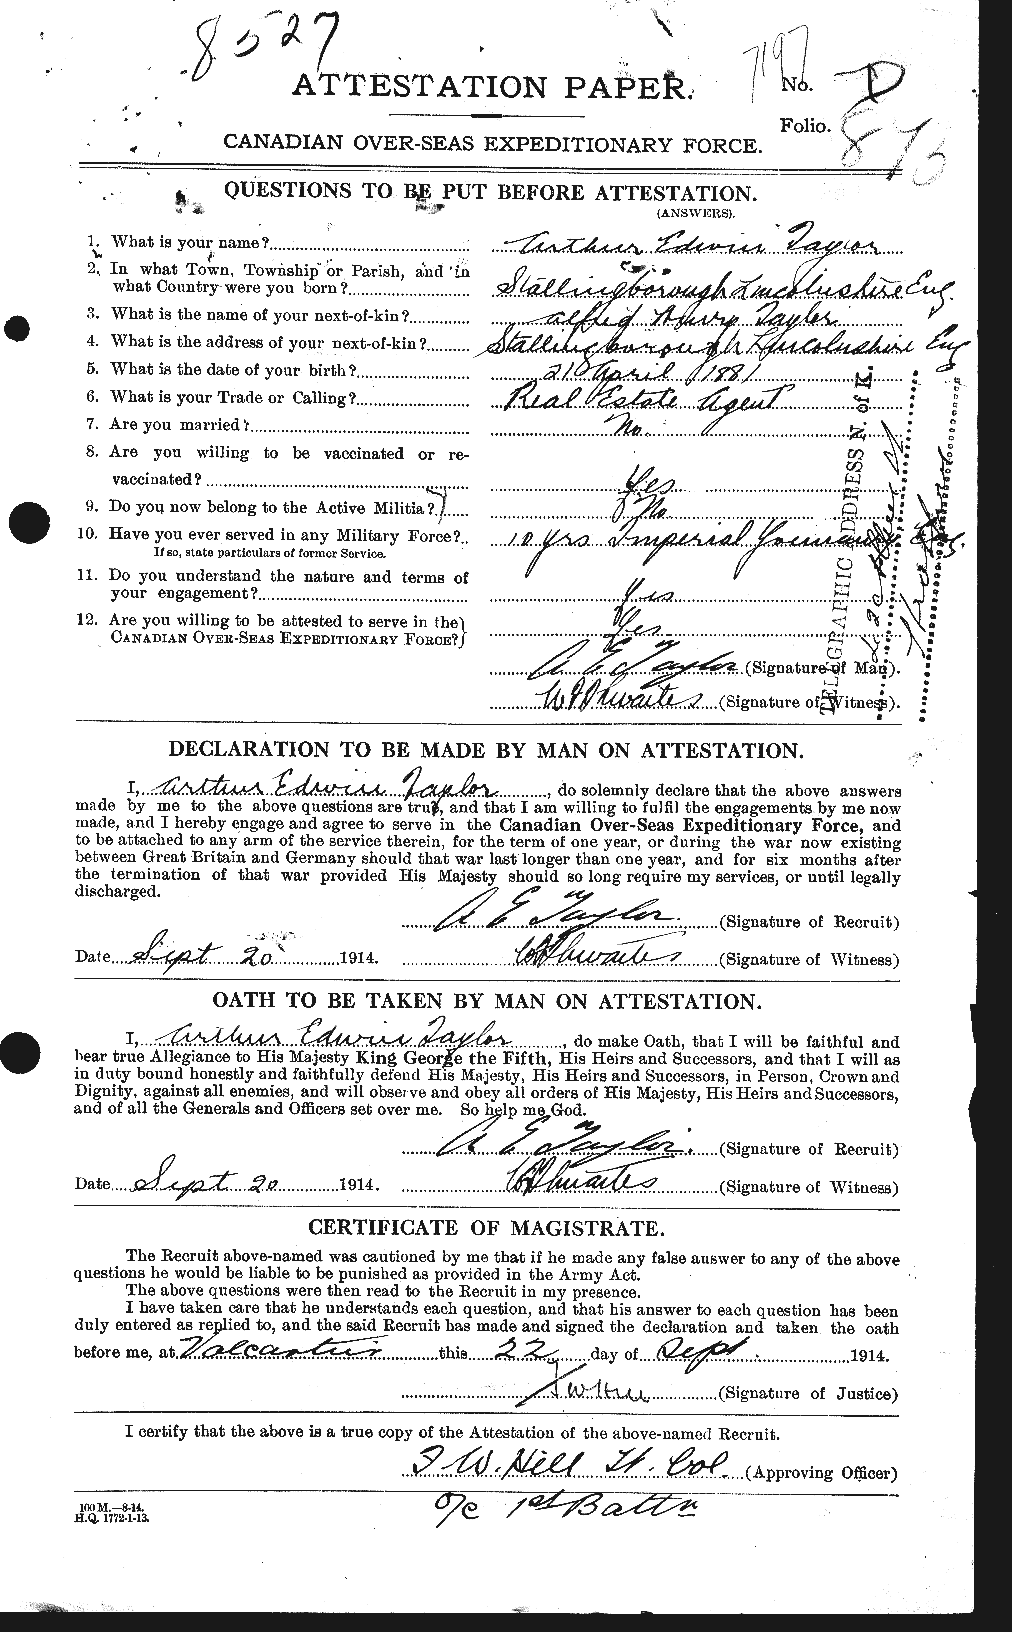 Dossiers du Personnel de la Première Guerre mondiale - CEC 626721a